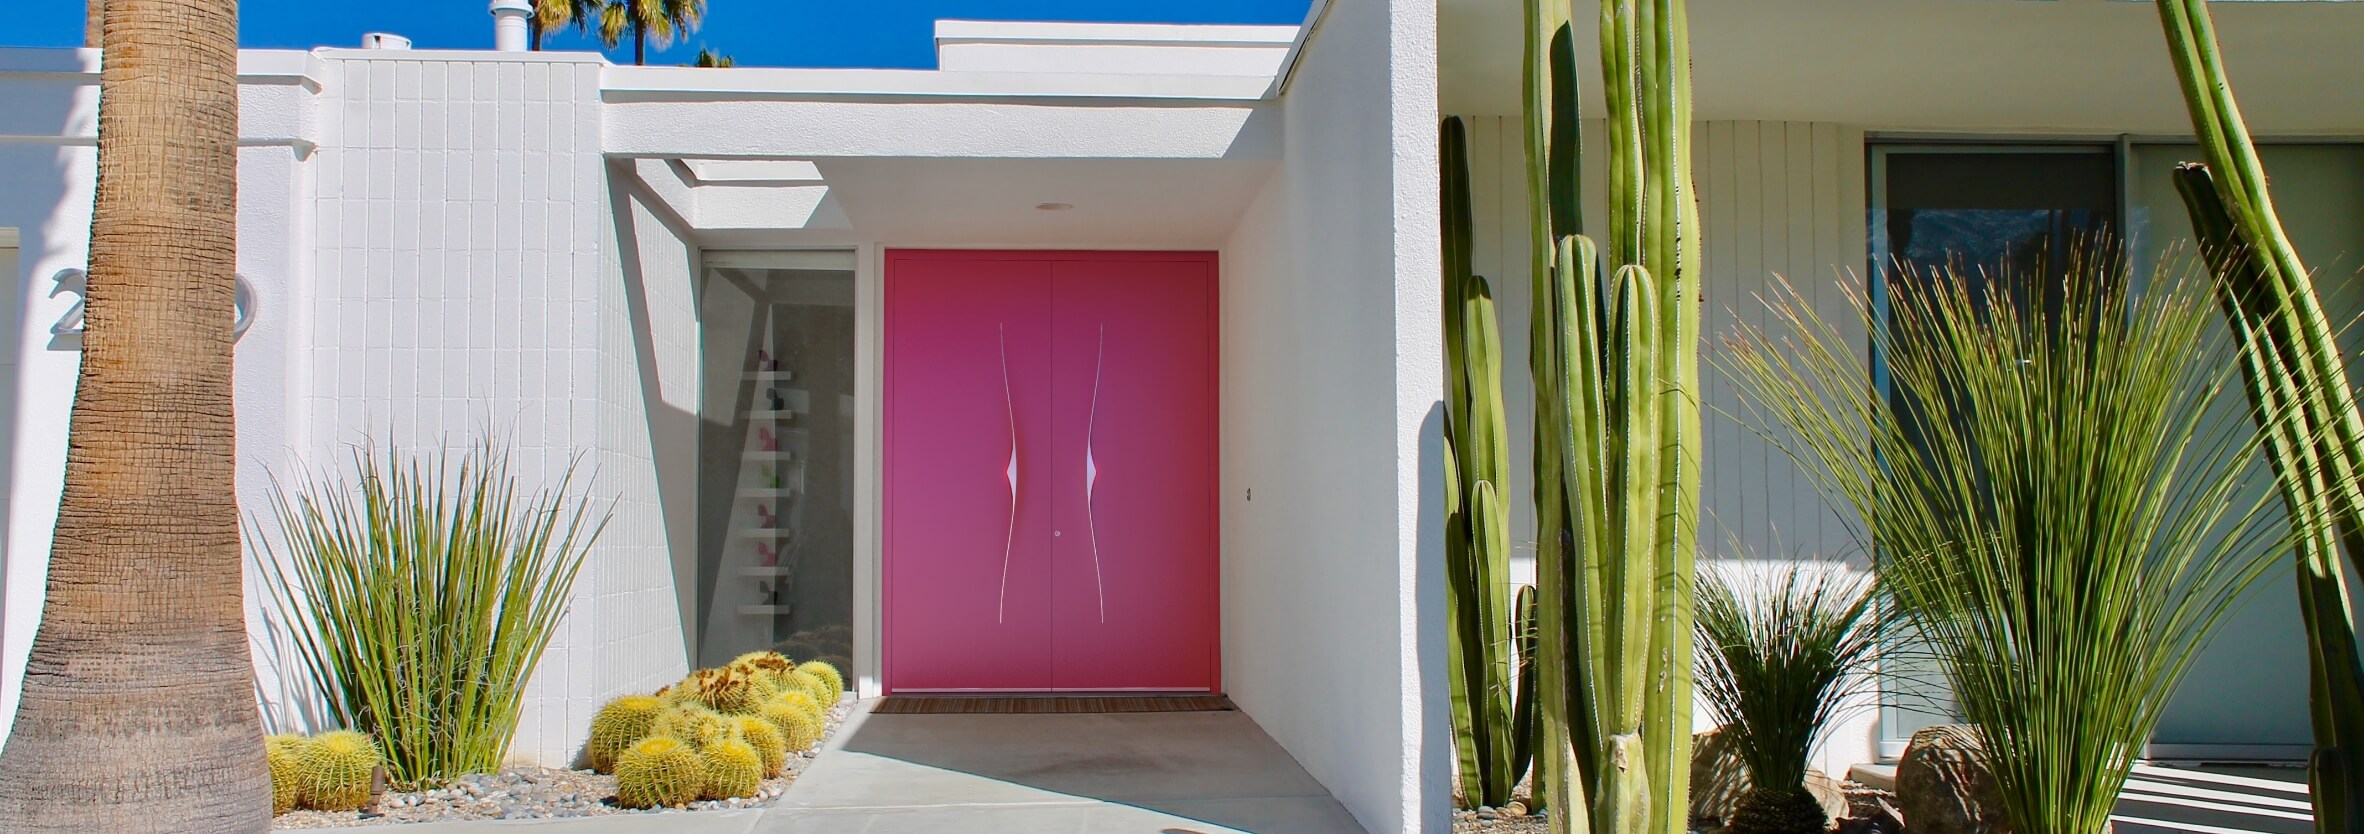 Modern pink front door